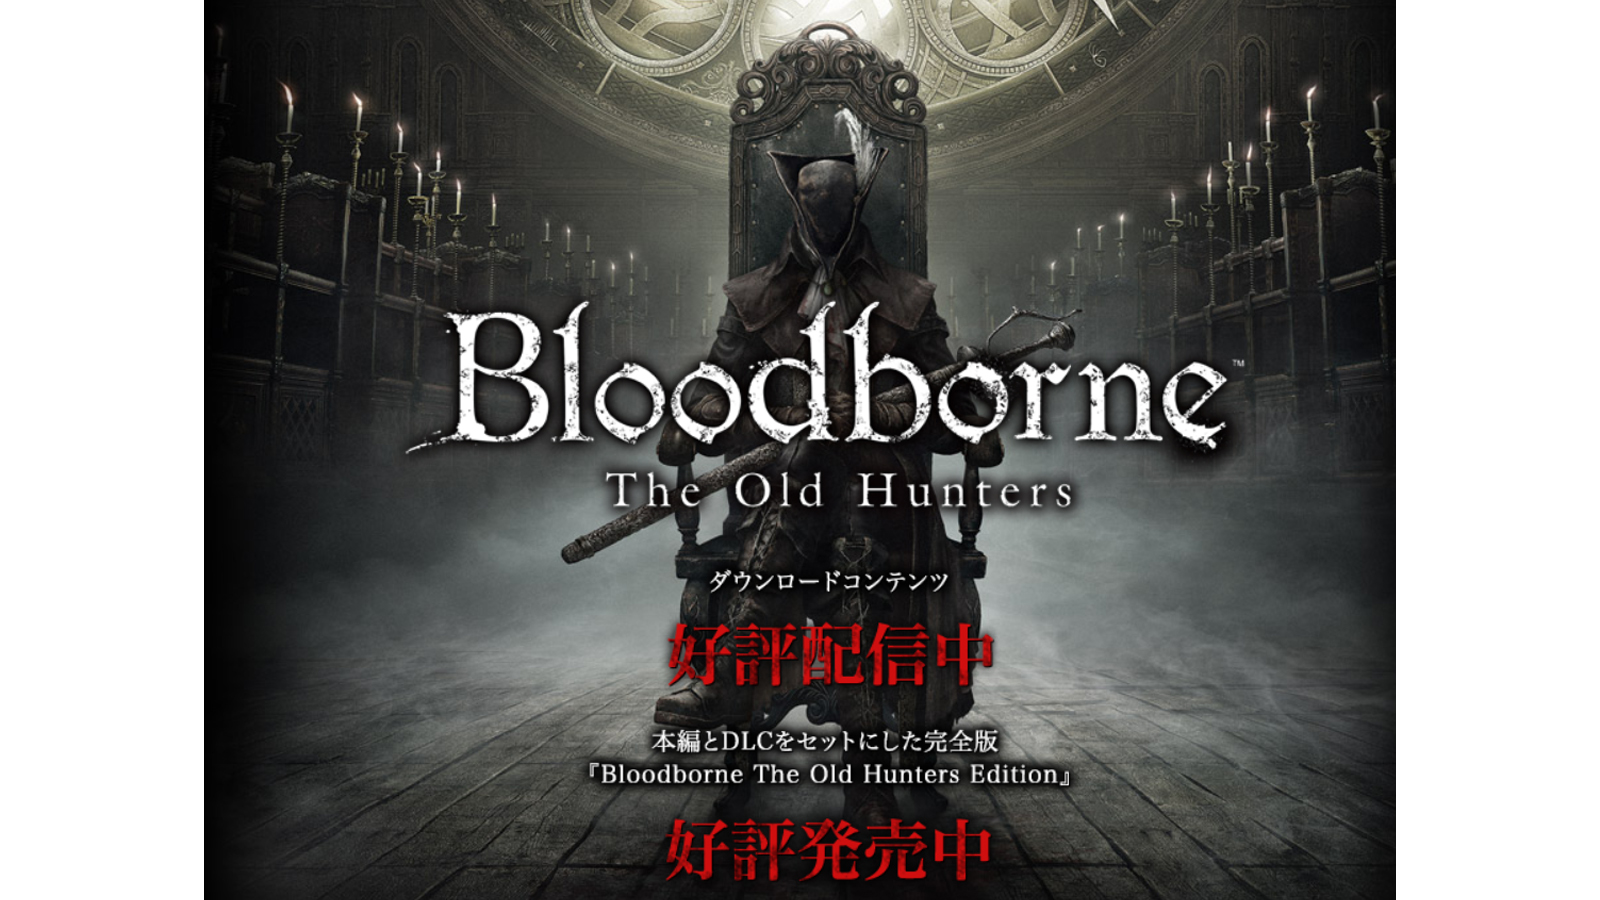 Find detailed information about Bloodborne